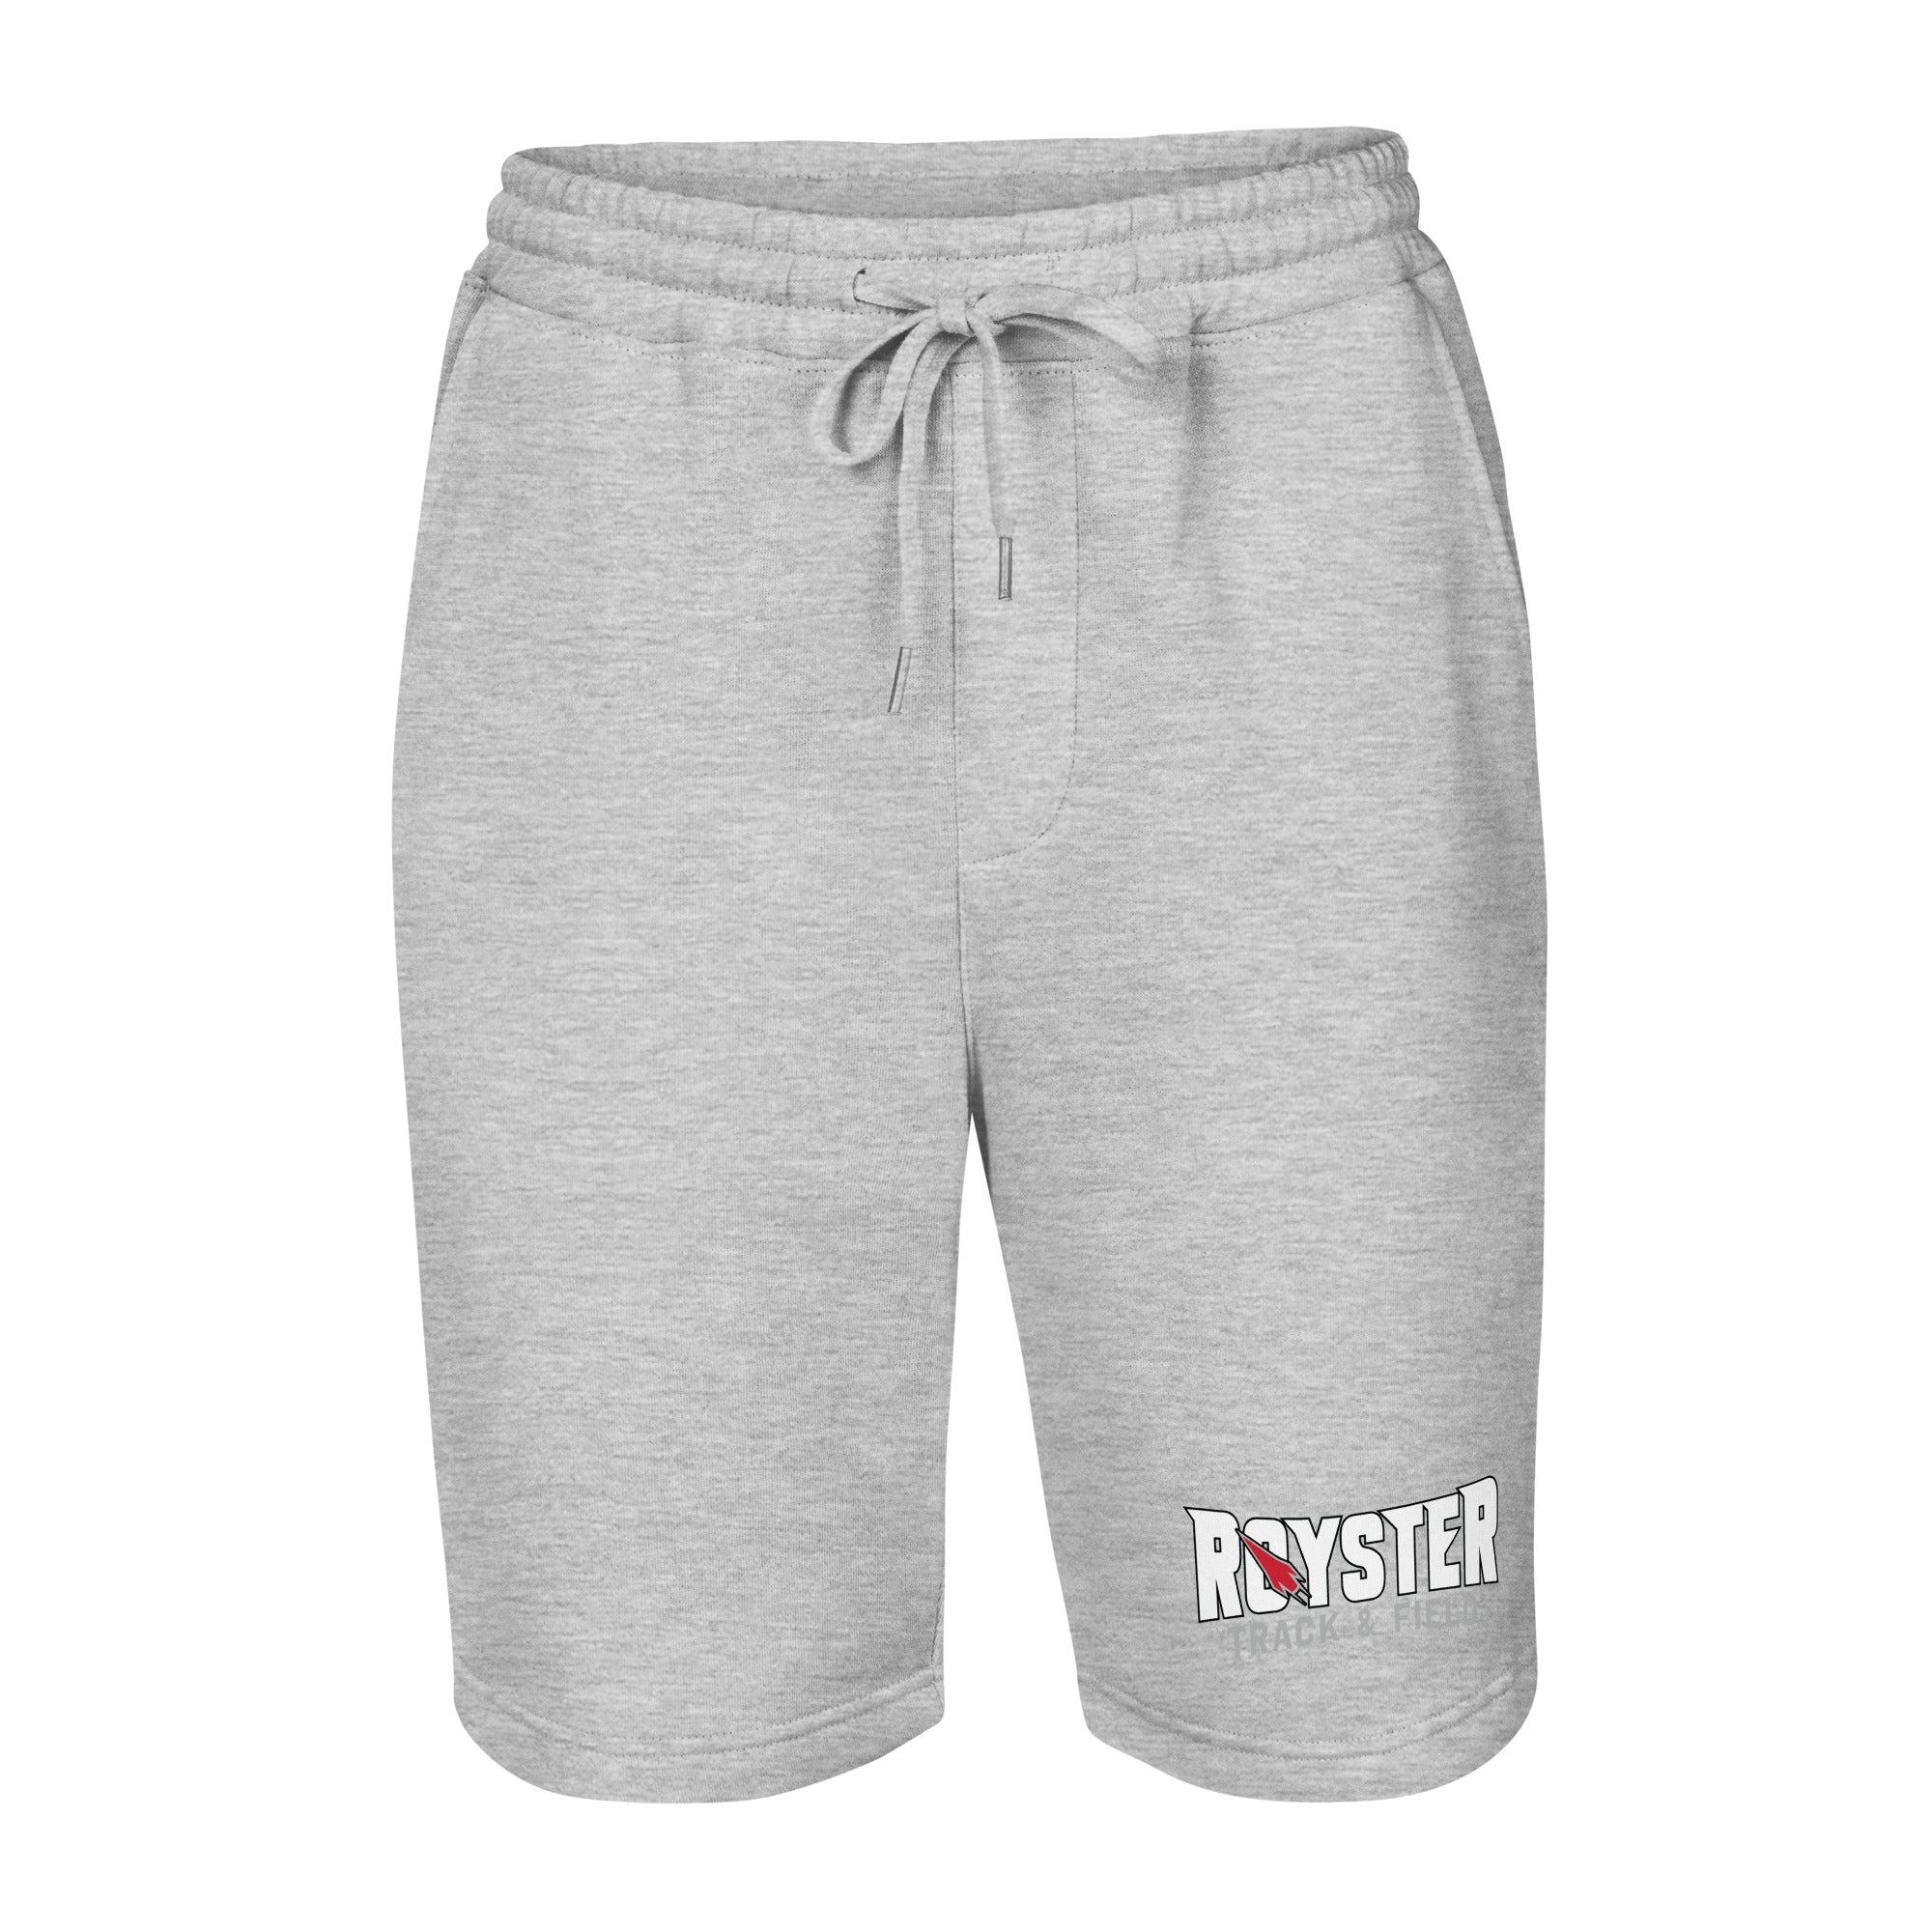 Royster Rockets Track & Field Mens Fleece Shorts